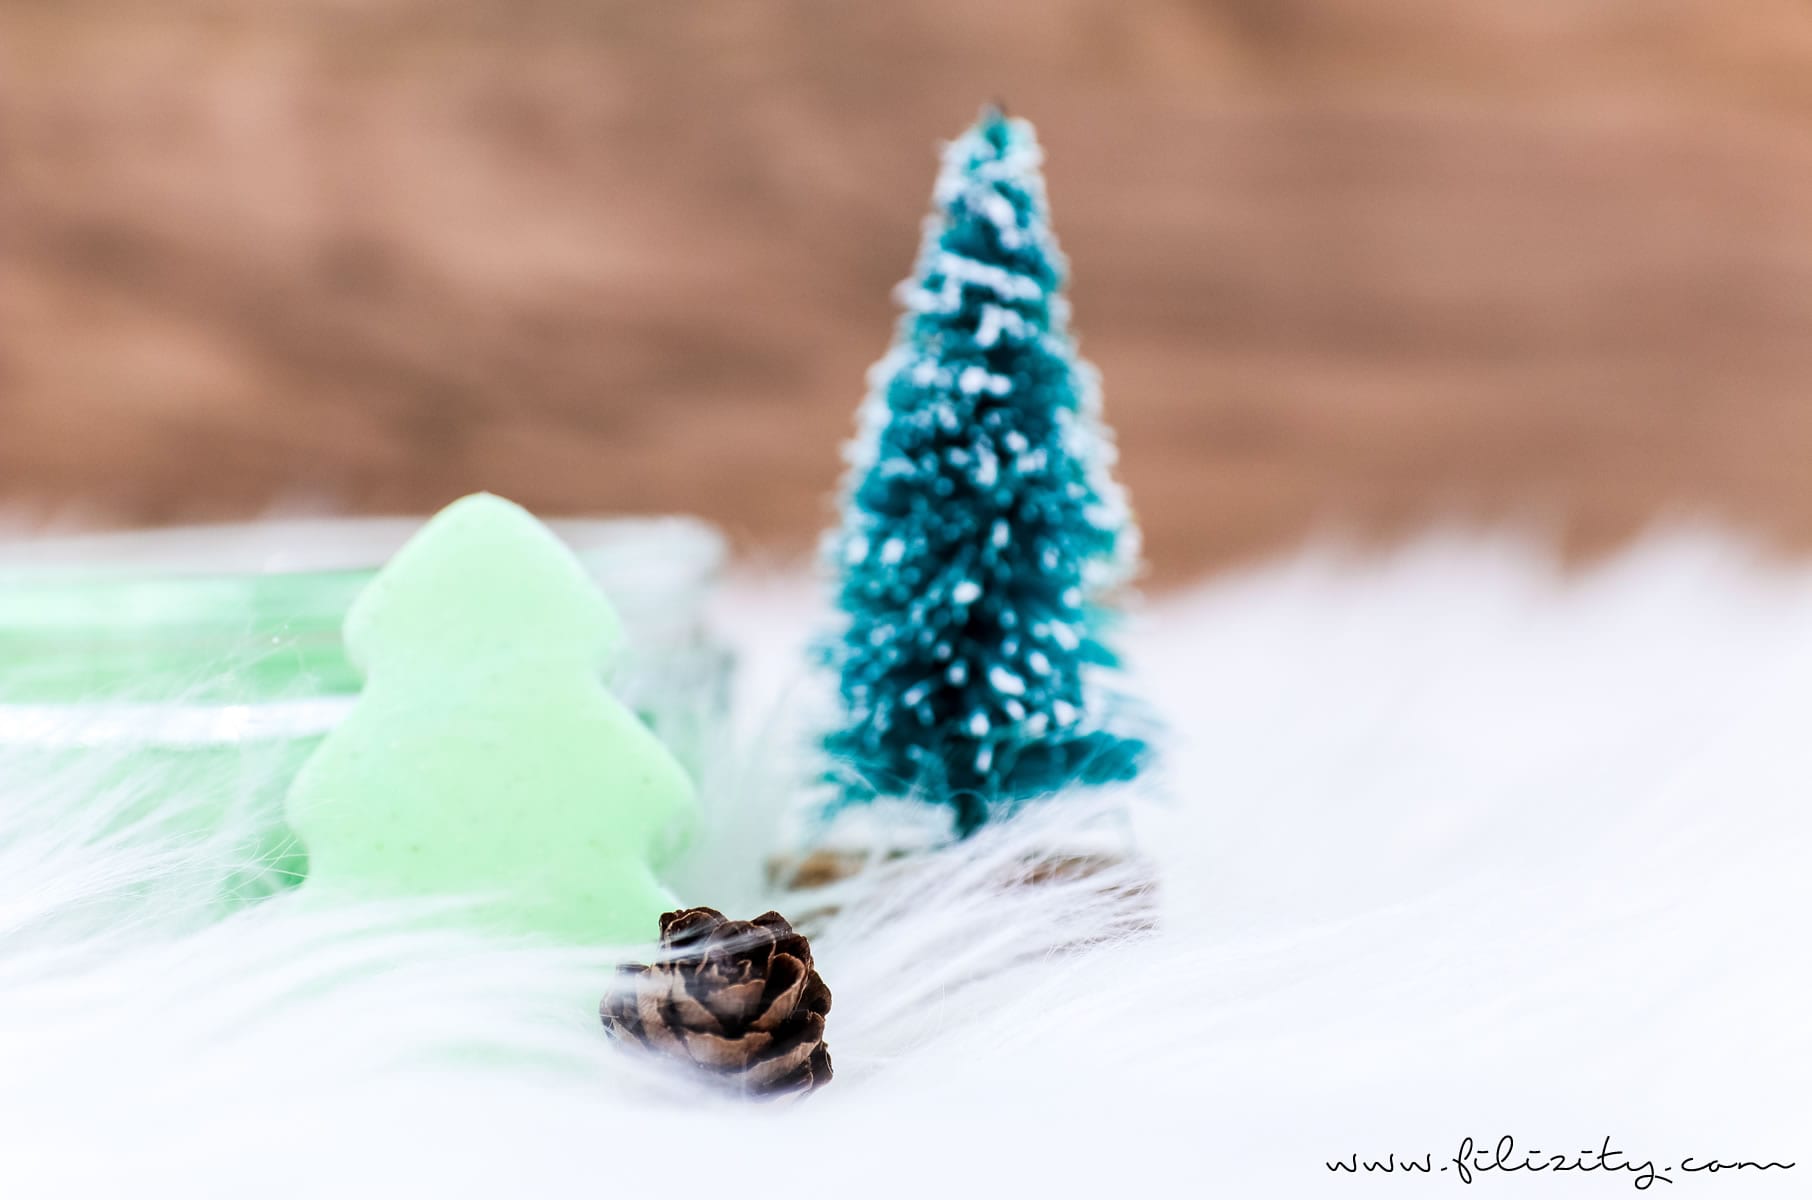 Weihnachts-Geschenkidee: DIY Knetseife "Oh, Tannenbaum" selber machen | Filizity.com | DIY-Blog aus dem Rheinland #weihnachten #geschenkidee